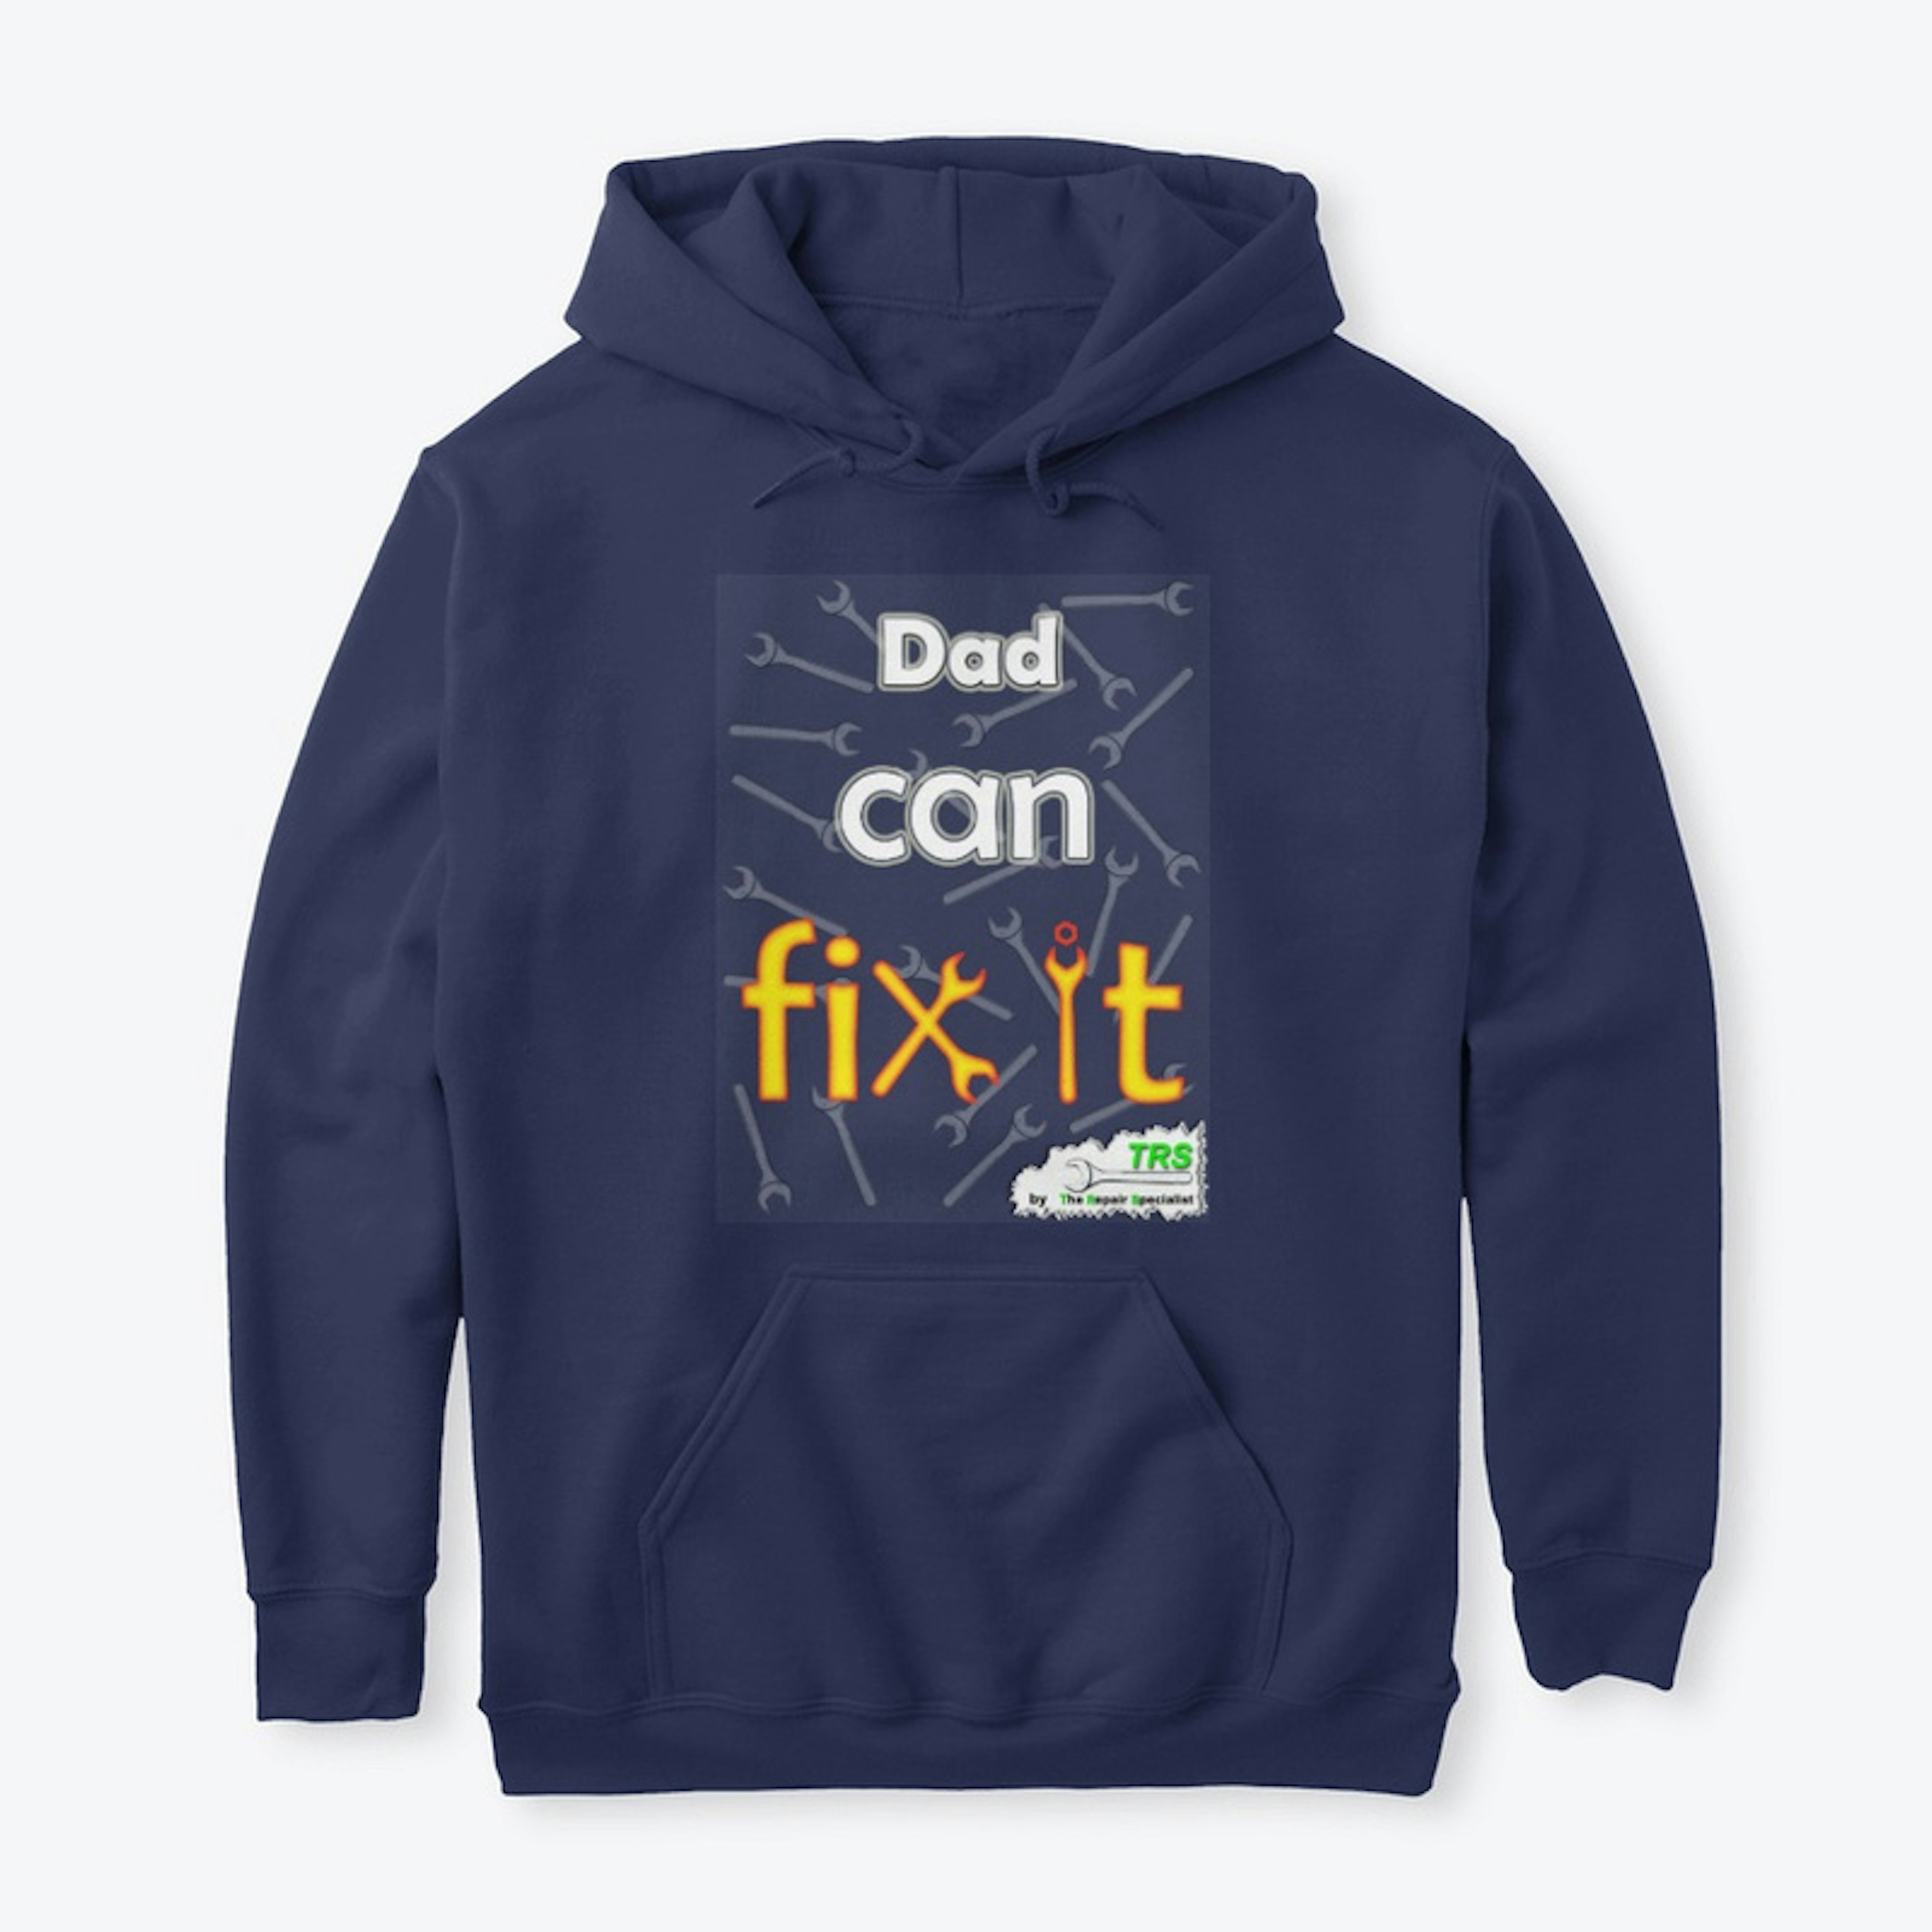 Dad can fix it - Kids 